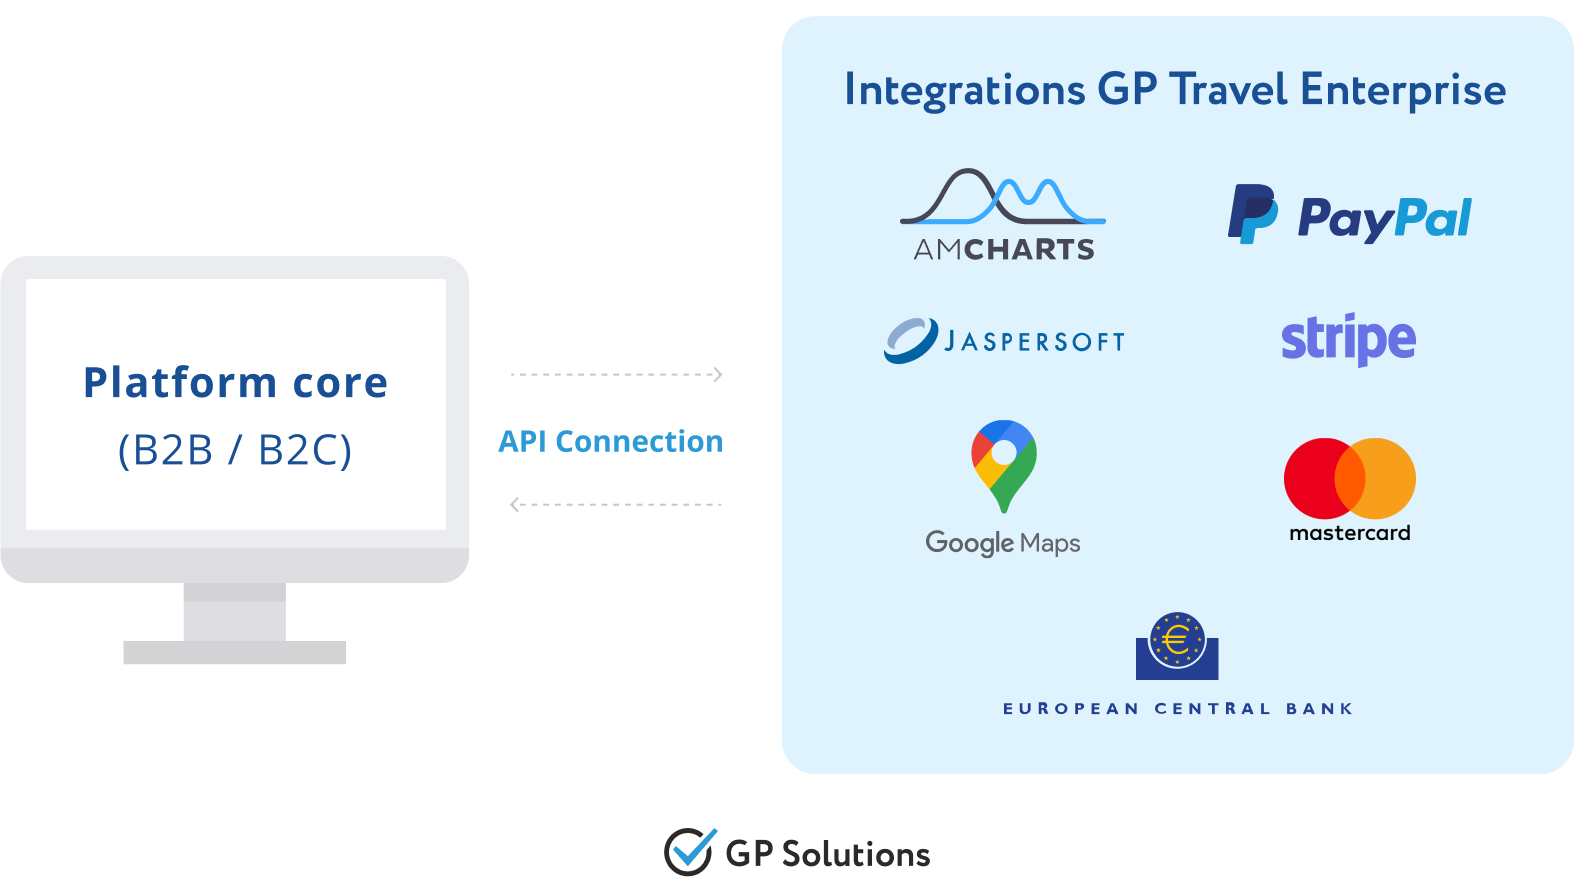 GP Travel Enterprise integrations API connection scheme